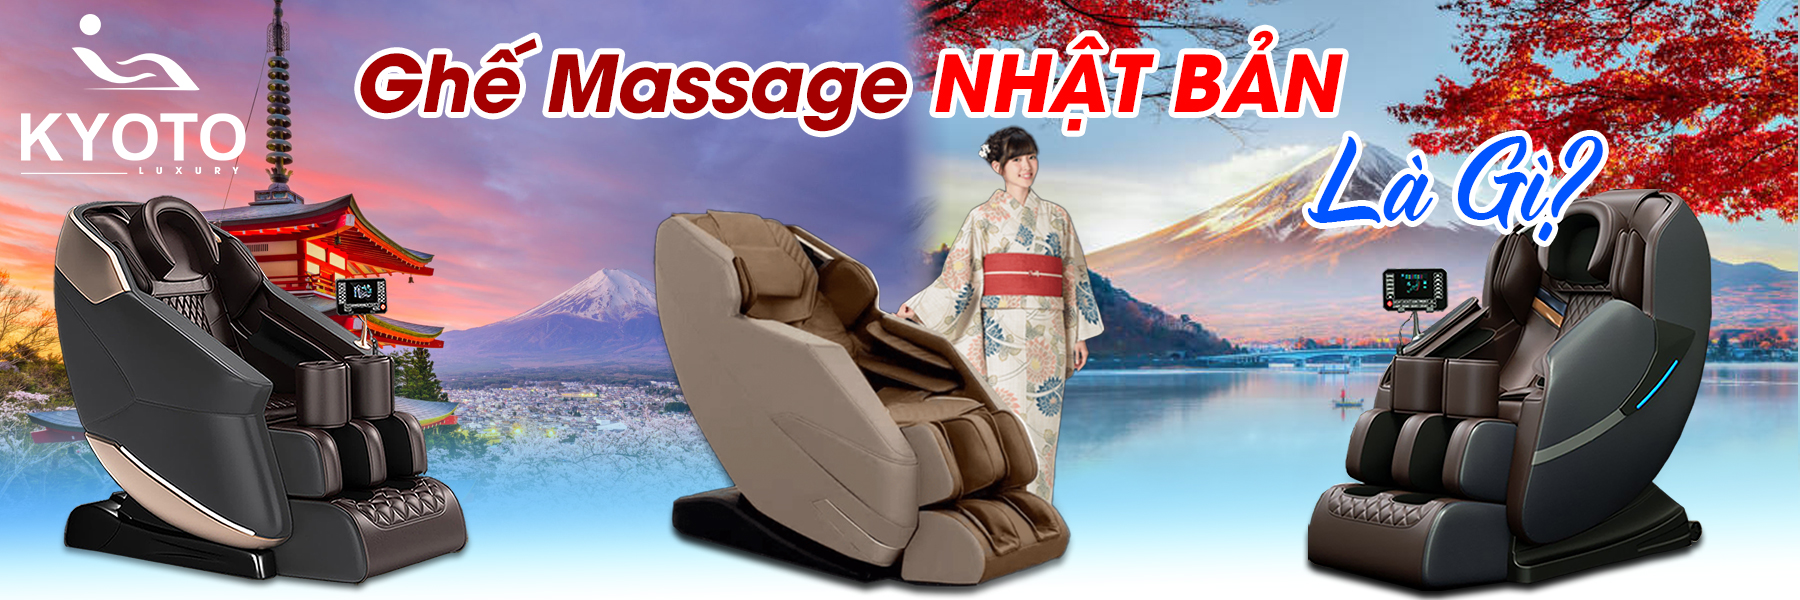 Tìm Hiểu Về Ghế Massage Nhật Bản - Thương Hiệu Hàng Đầu!